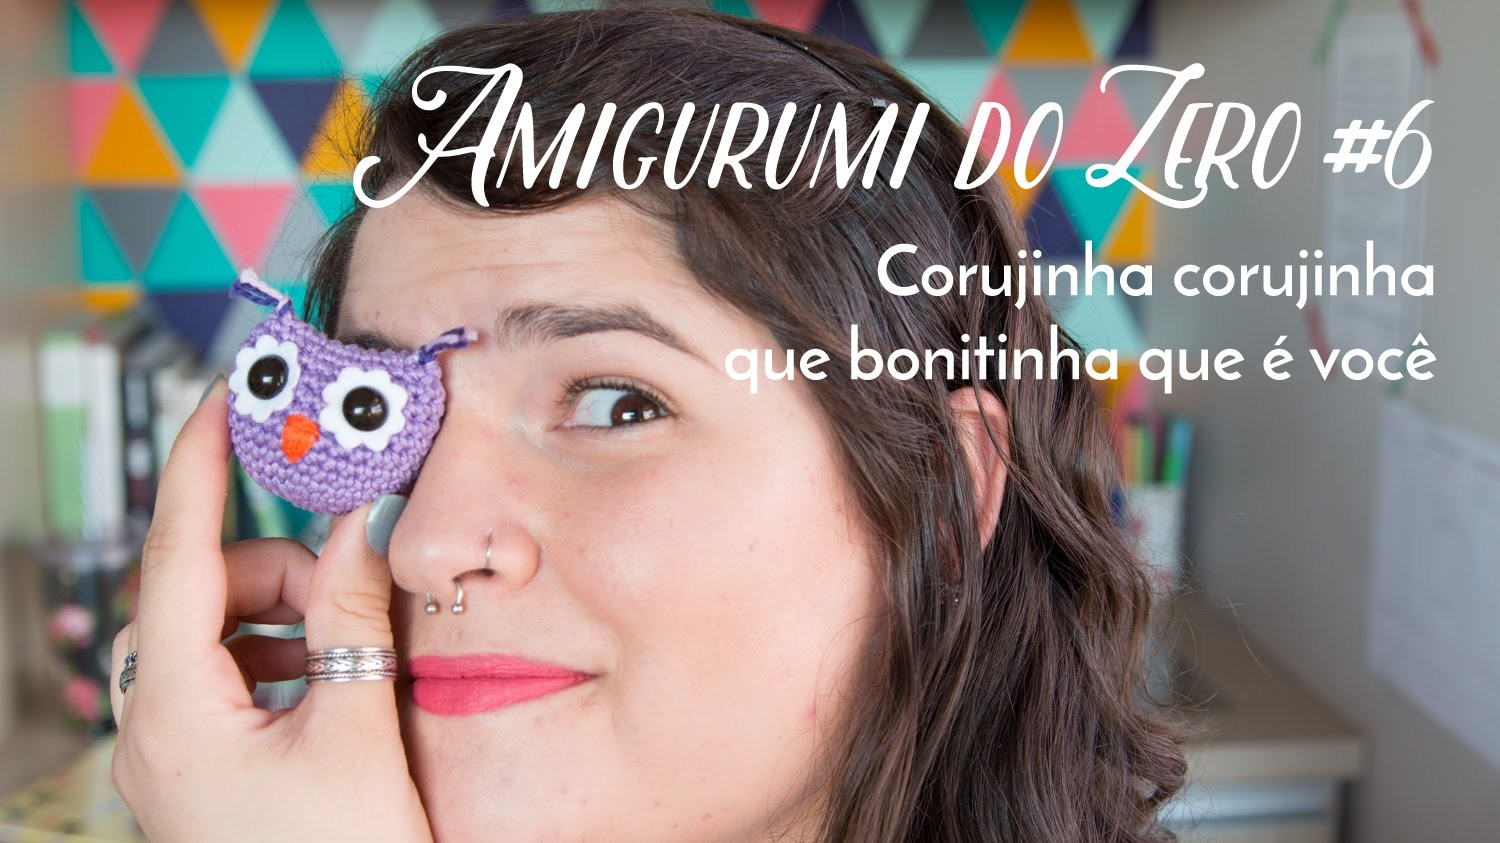 Amigurumi do Zero #6 - Corujinha corujinha ♥